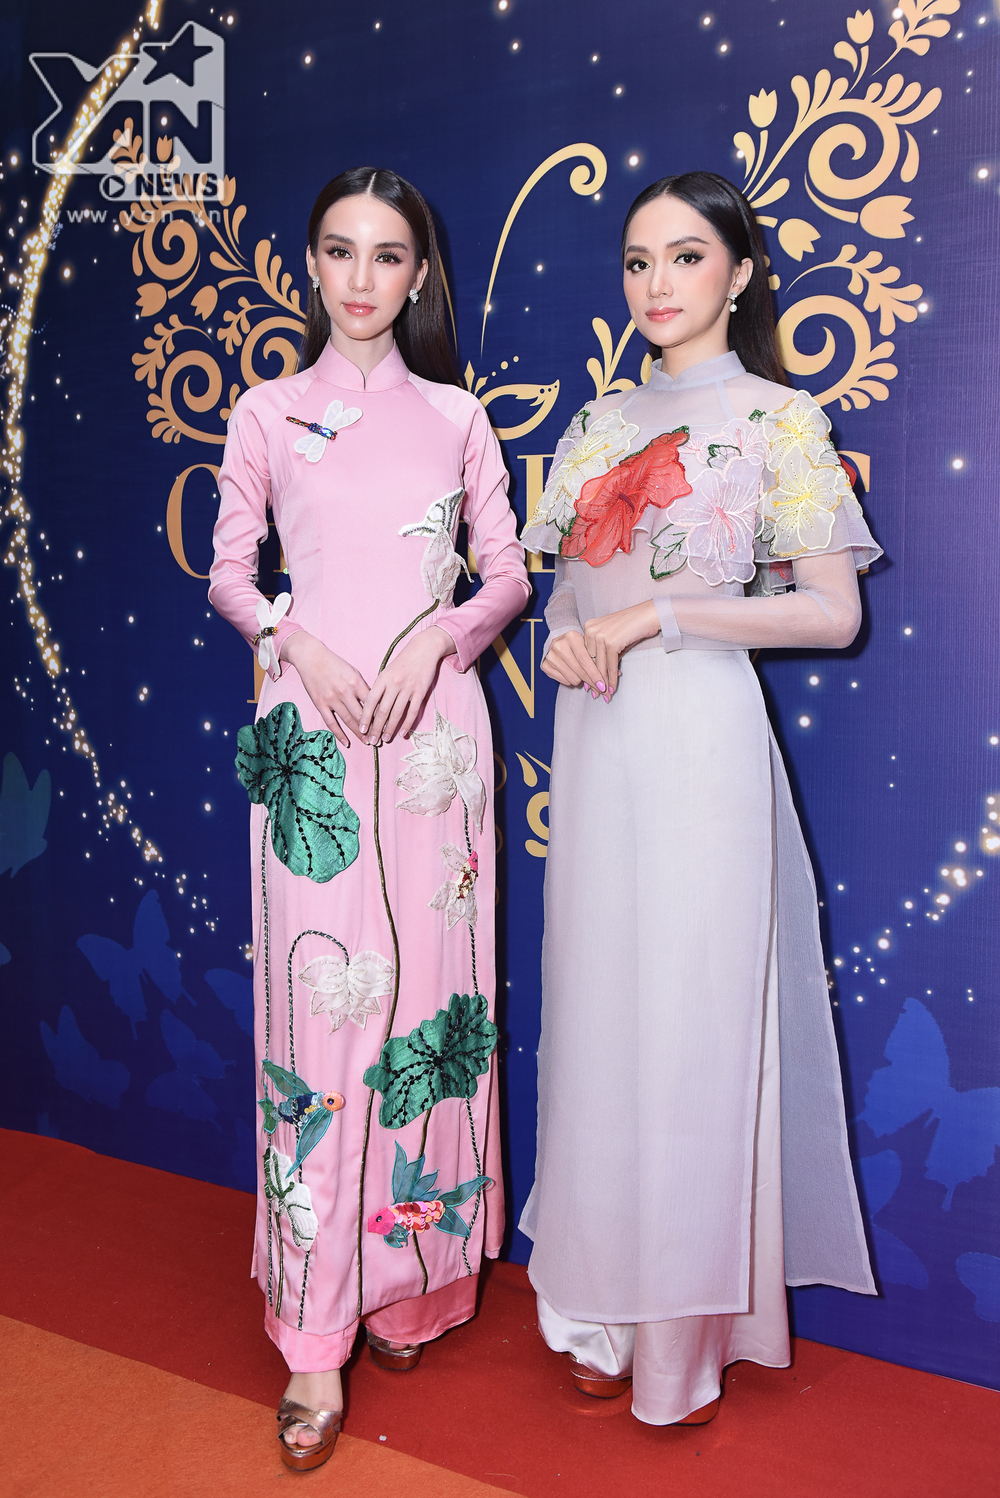 
Hai người đẹp chuyển giới Hương Giang và Yoshi tỏa sáng cạnh nhau trong trang phục áo dài truyền  thống Việt Nam.